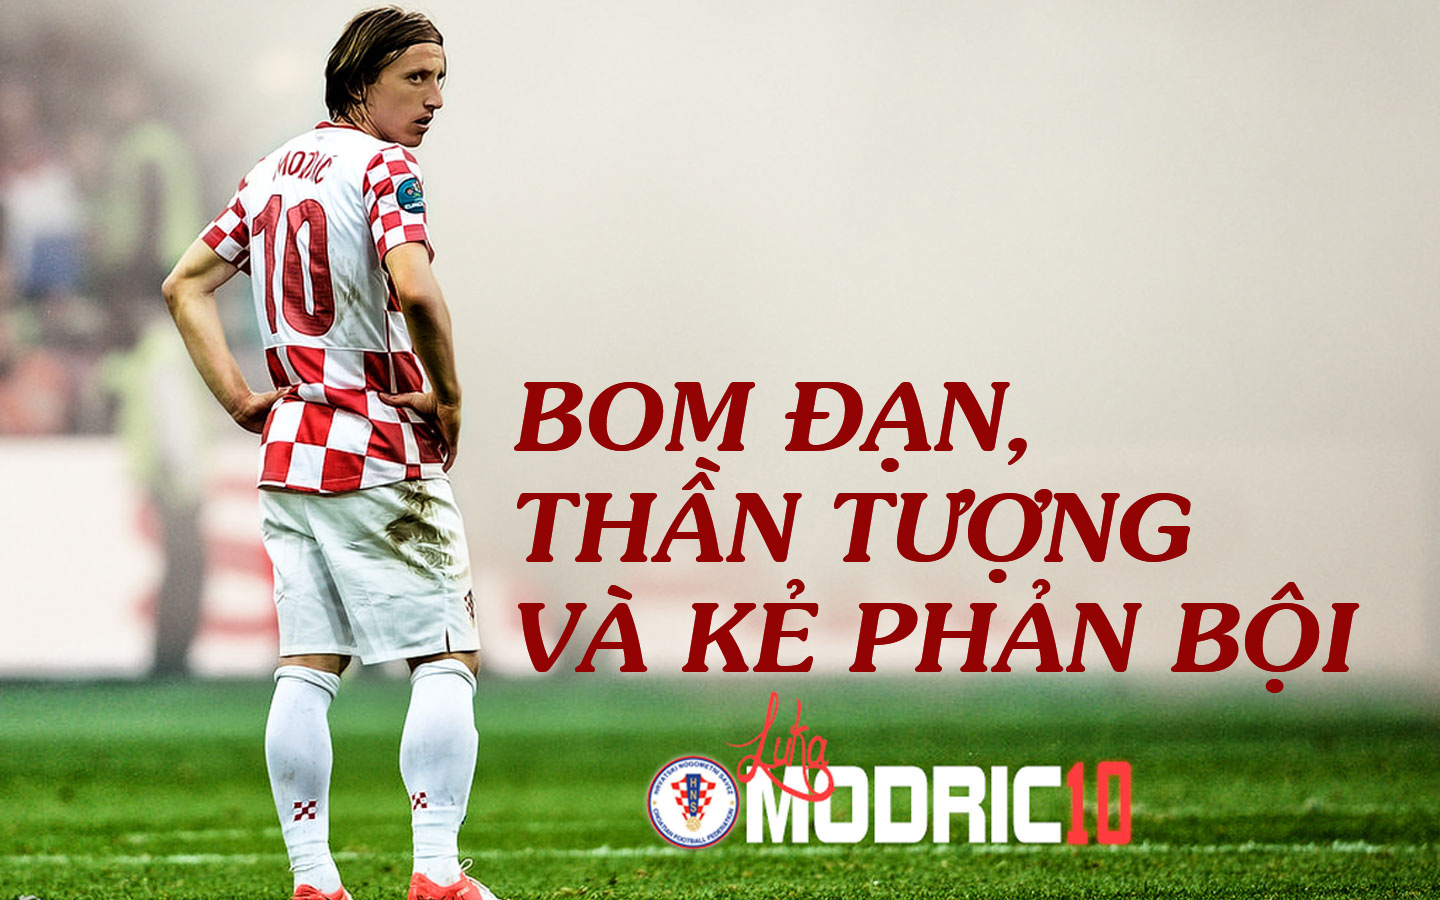 Croatia - Modric chung kết World Cup: Bóng đá hắc ám & bản hùng ca của kẻ mang tội - 7